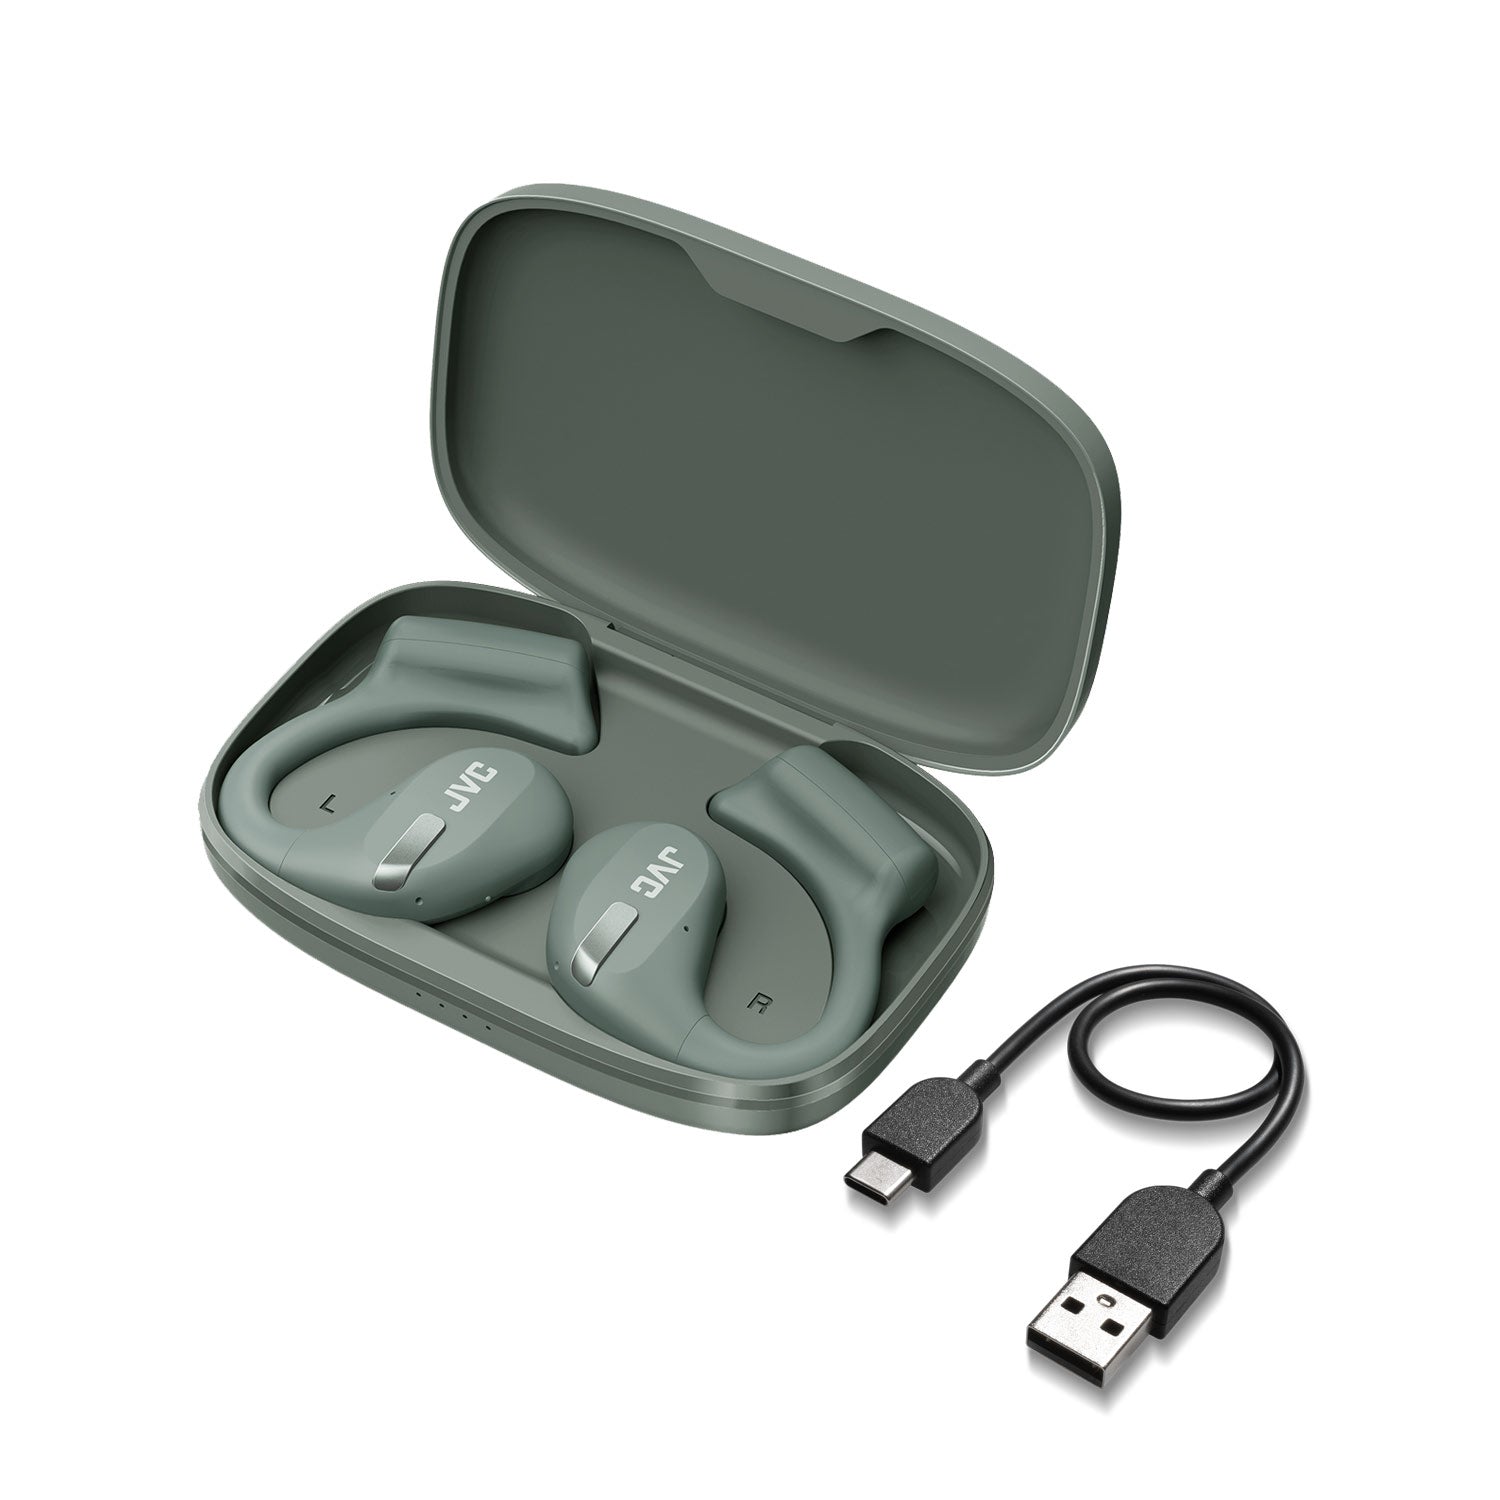 HA-NP50T-G Nearphones earphones and charging case usb lead